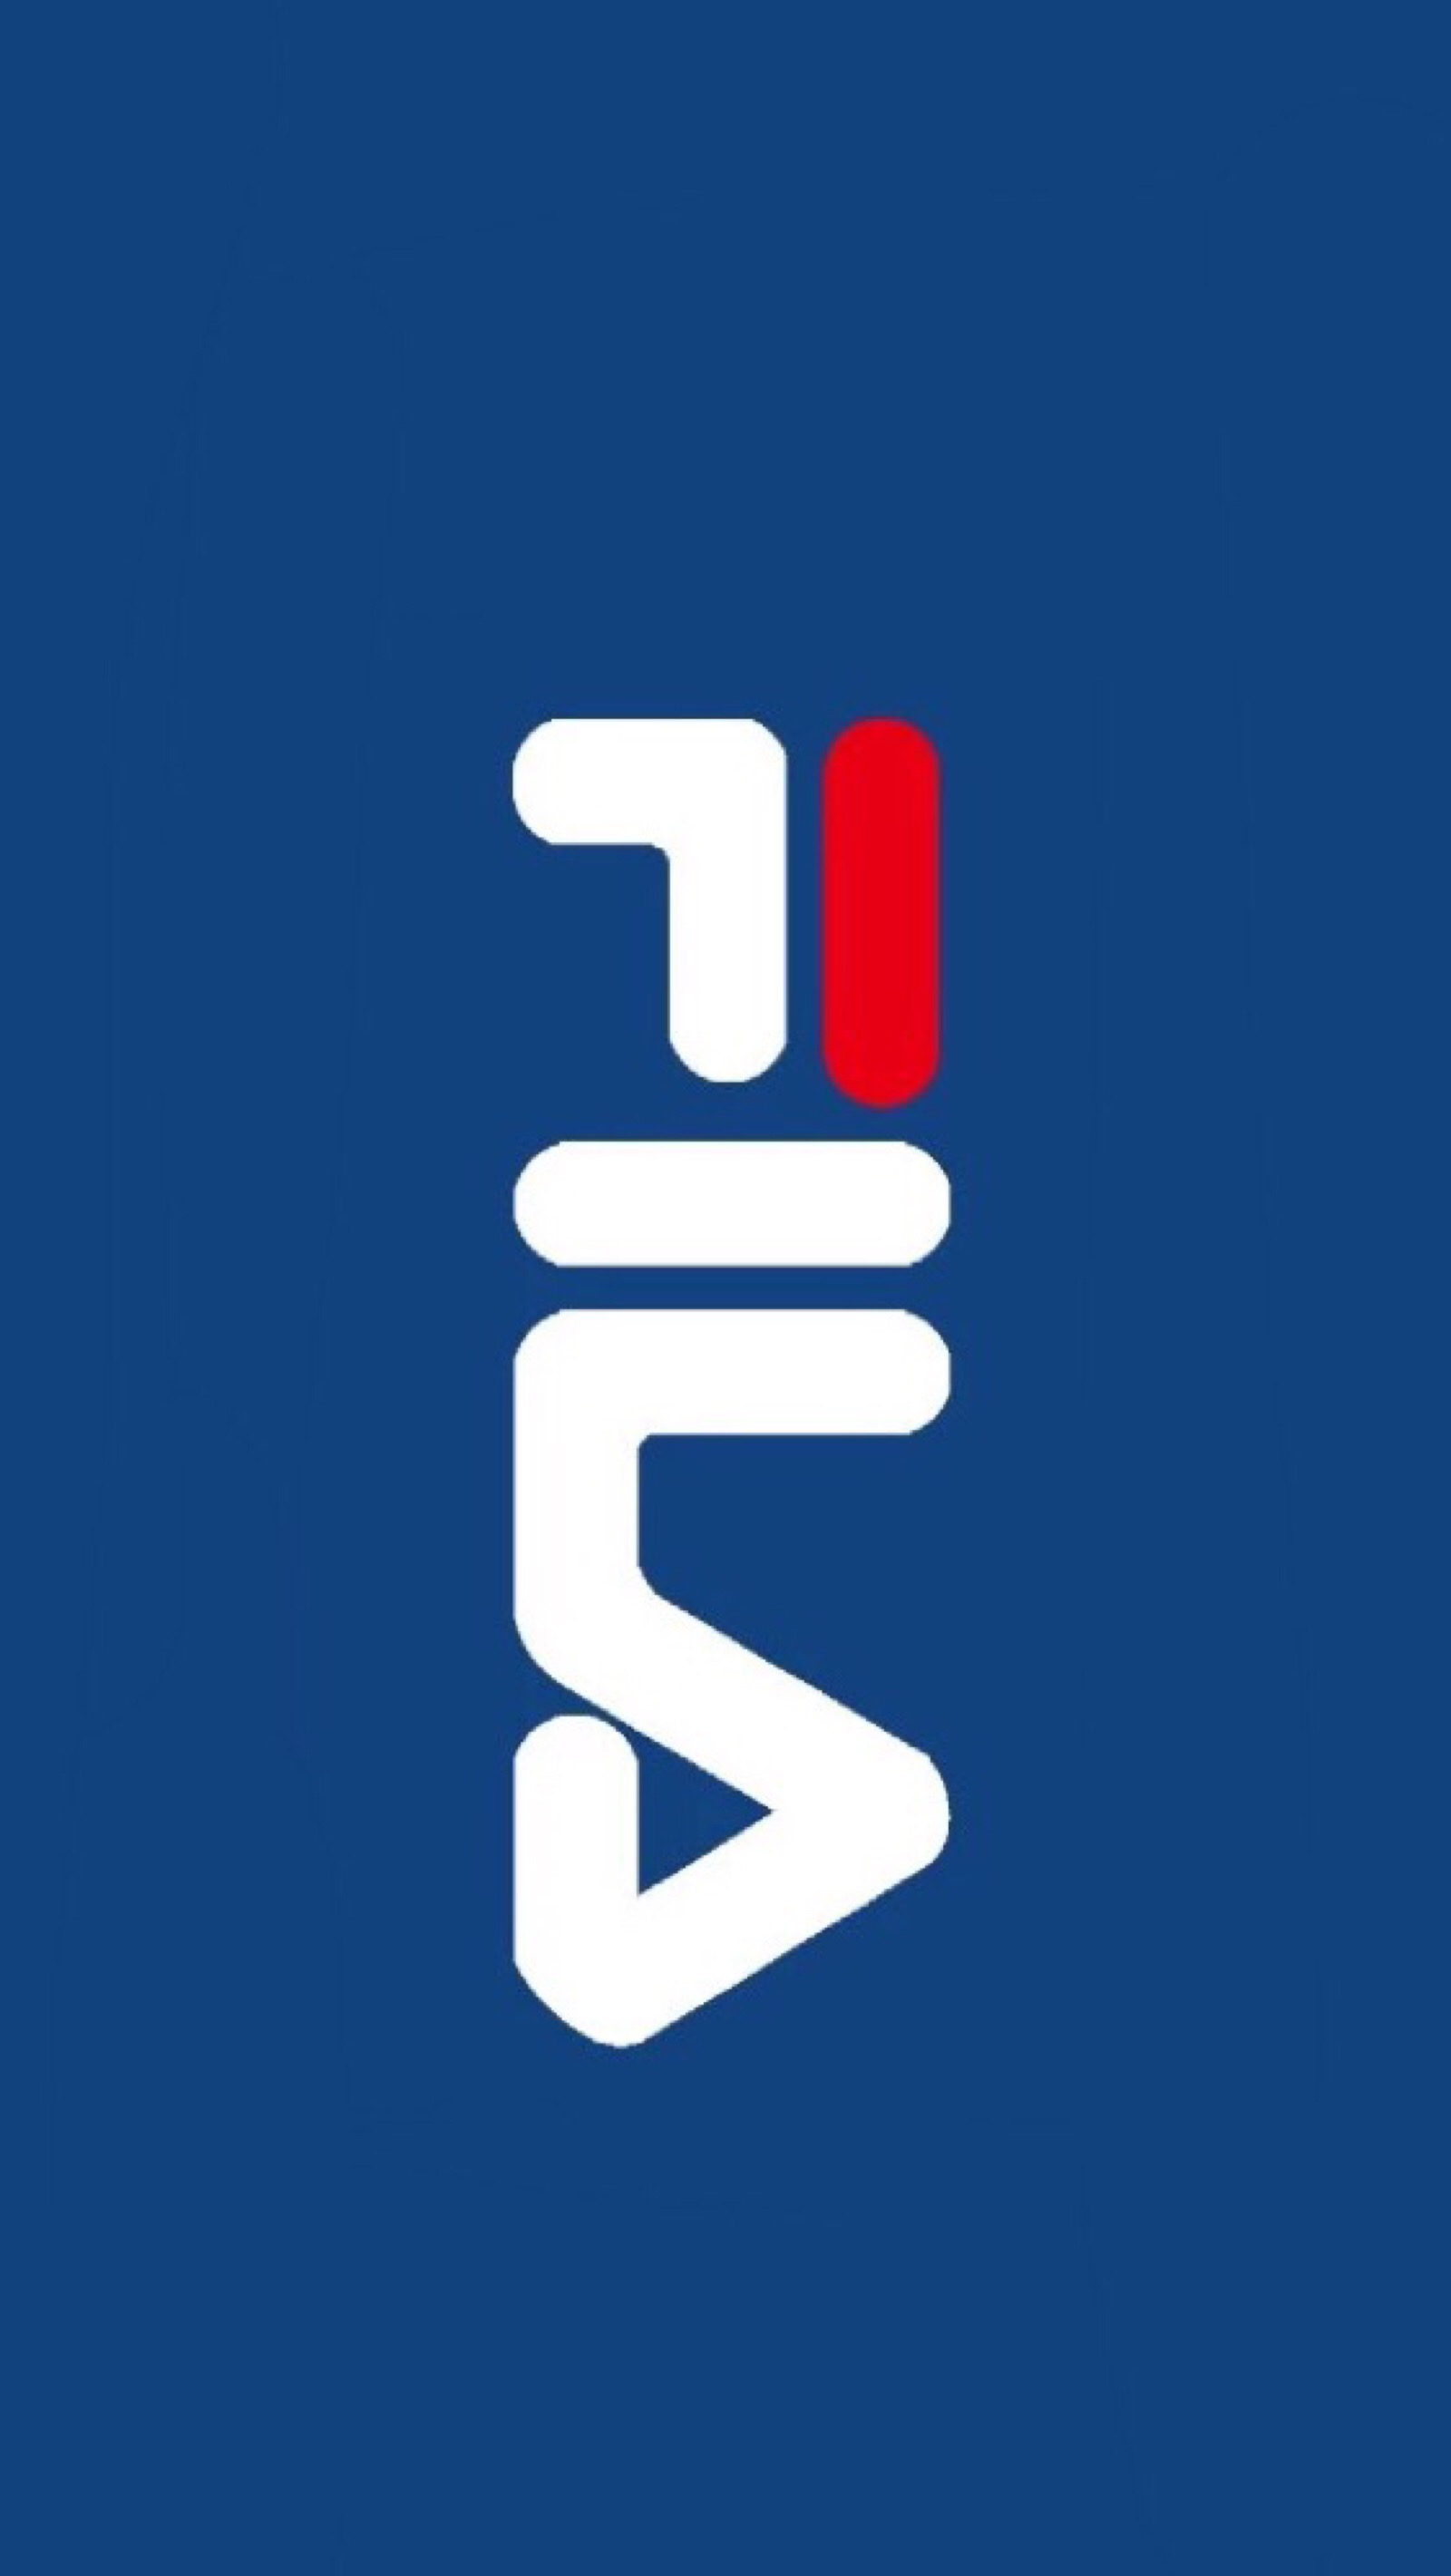 斐乐logo壁纸图片